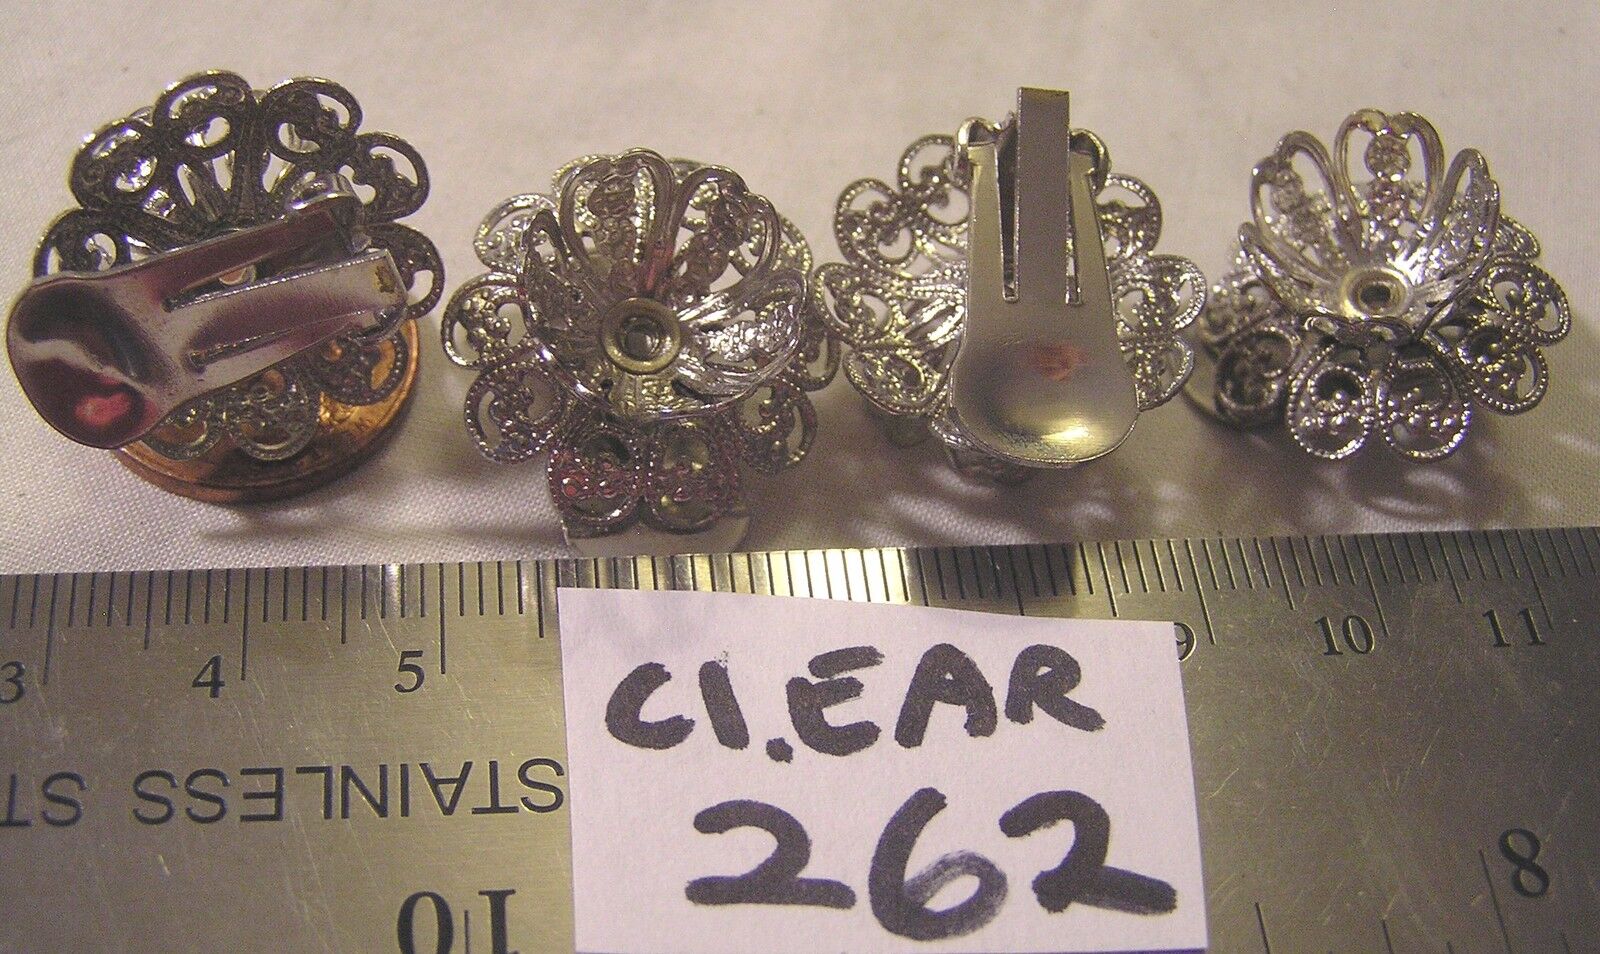 2 Pr Vtg Filigree Clip On Earrings  w 15mm Bead cap Crystal Jewelry Findings lot